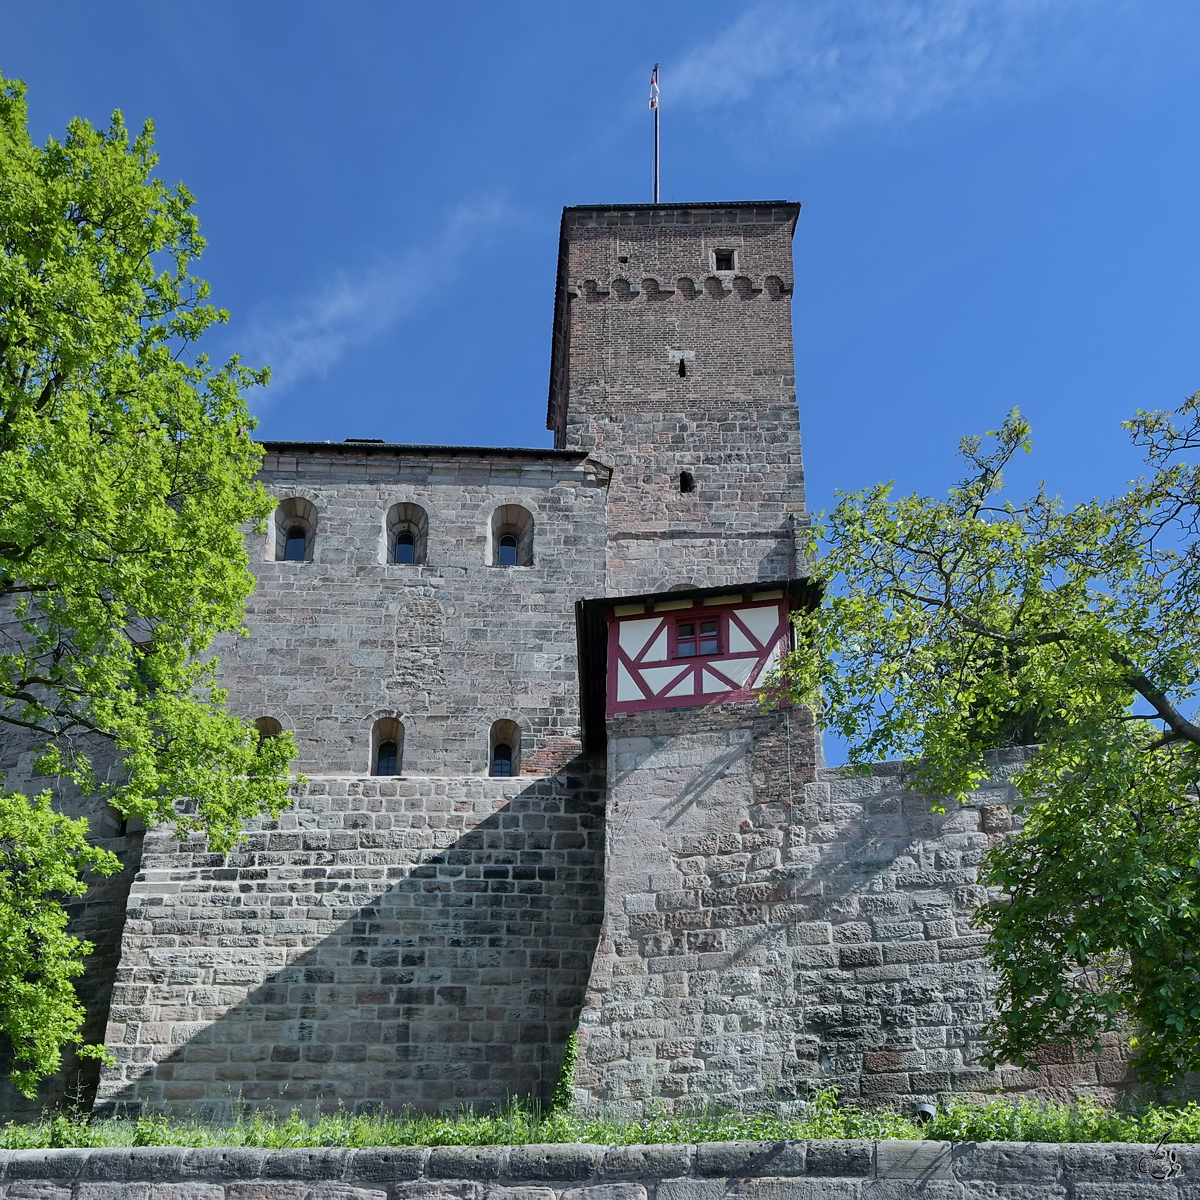 Teile der Nrnberger Burg. (Mai 2017)